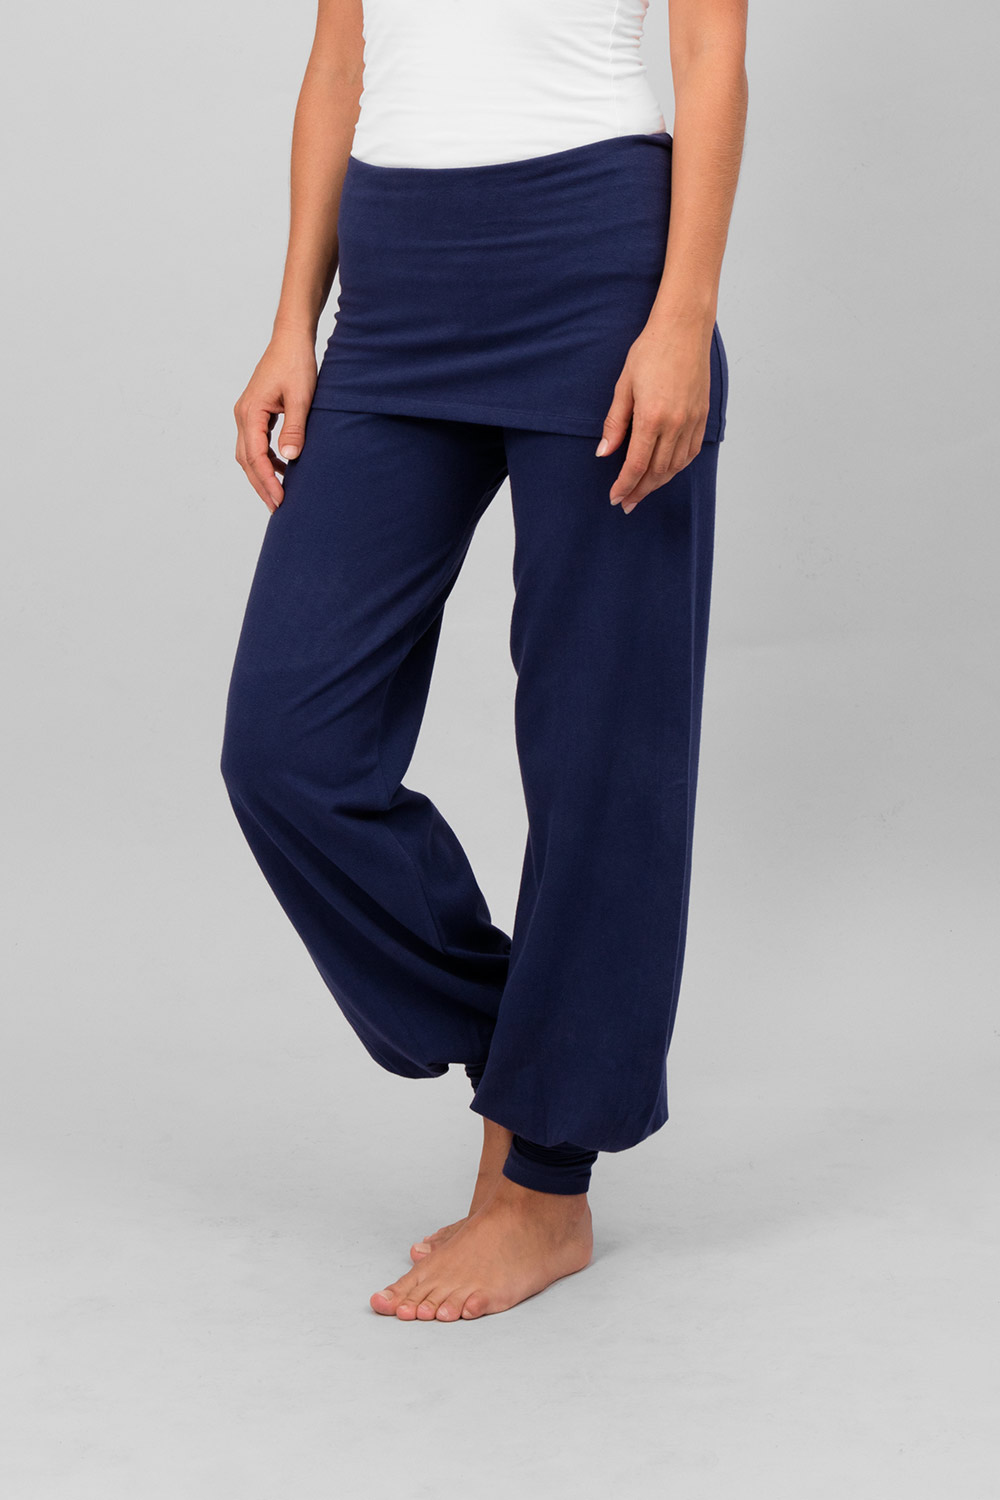 sohang pants atlantic blue front web1500